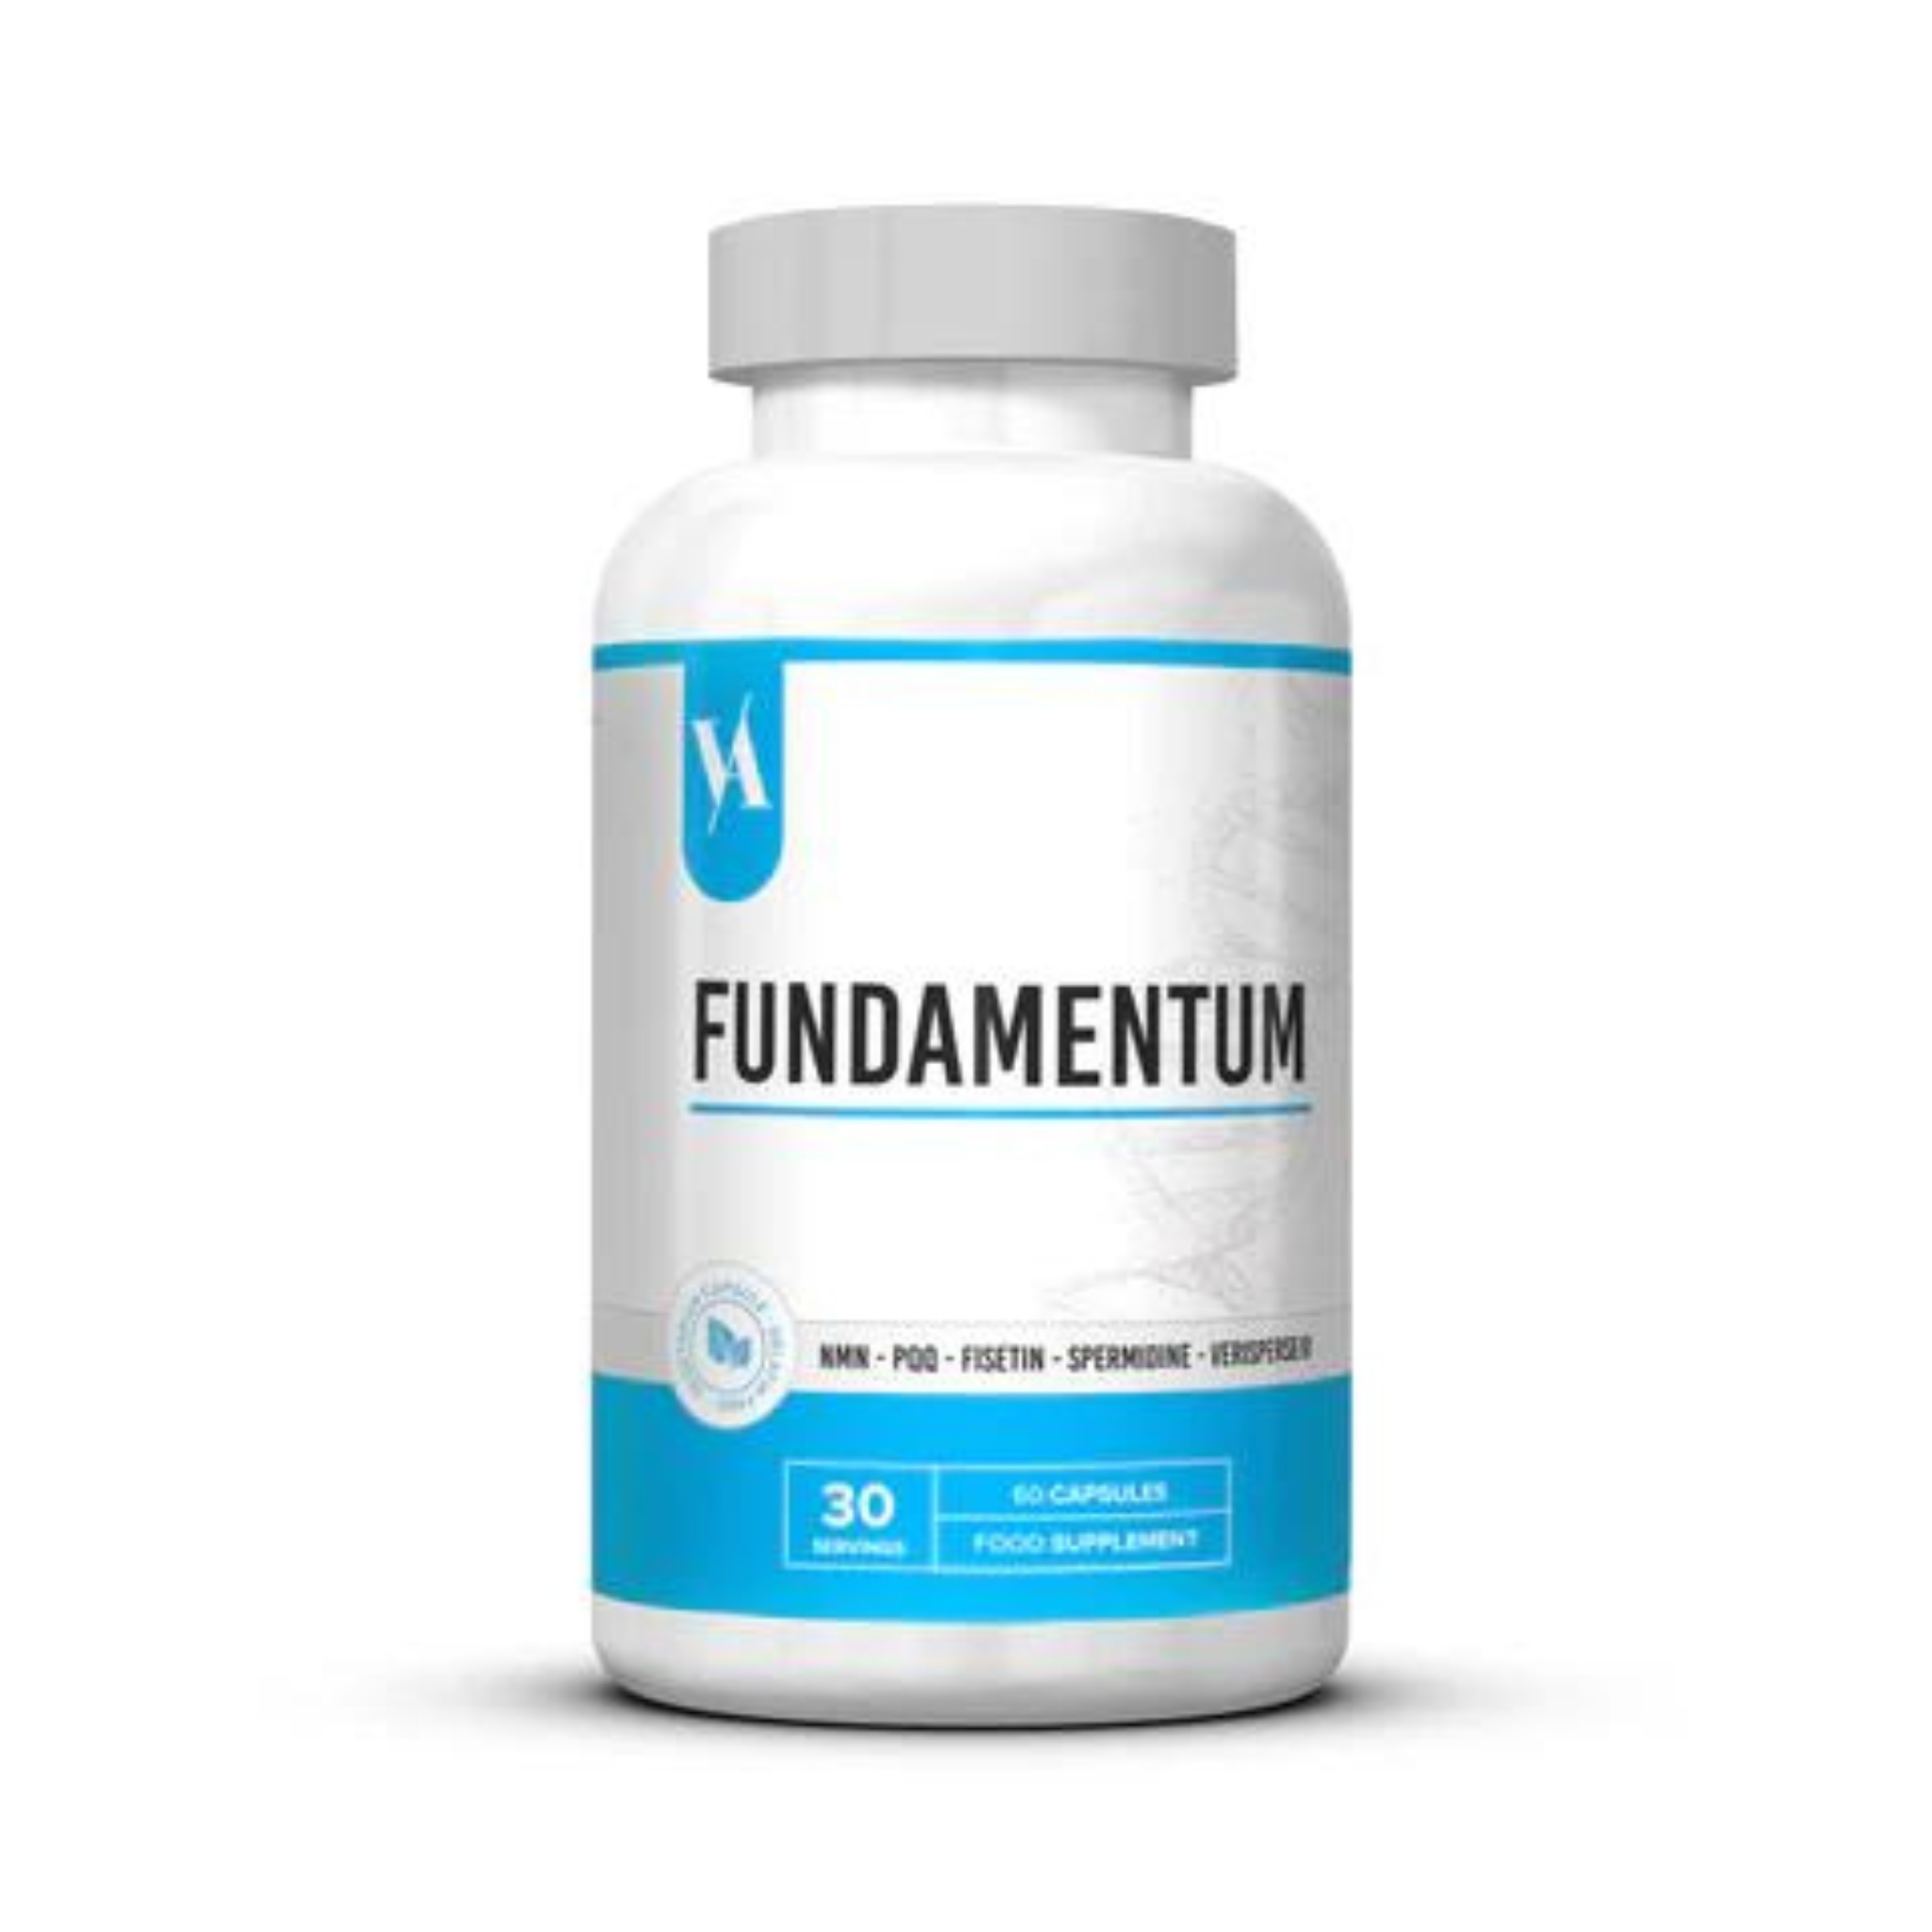 Fundamentum - Longevity Product, 30 Servings